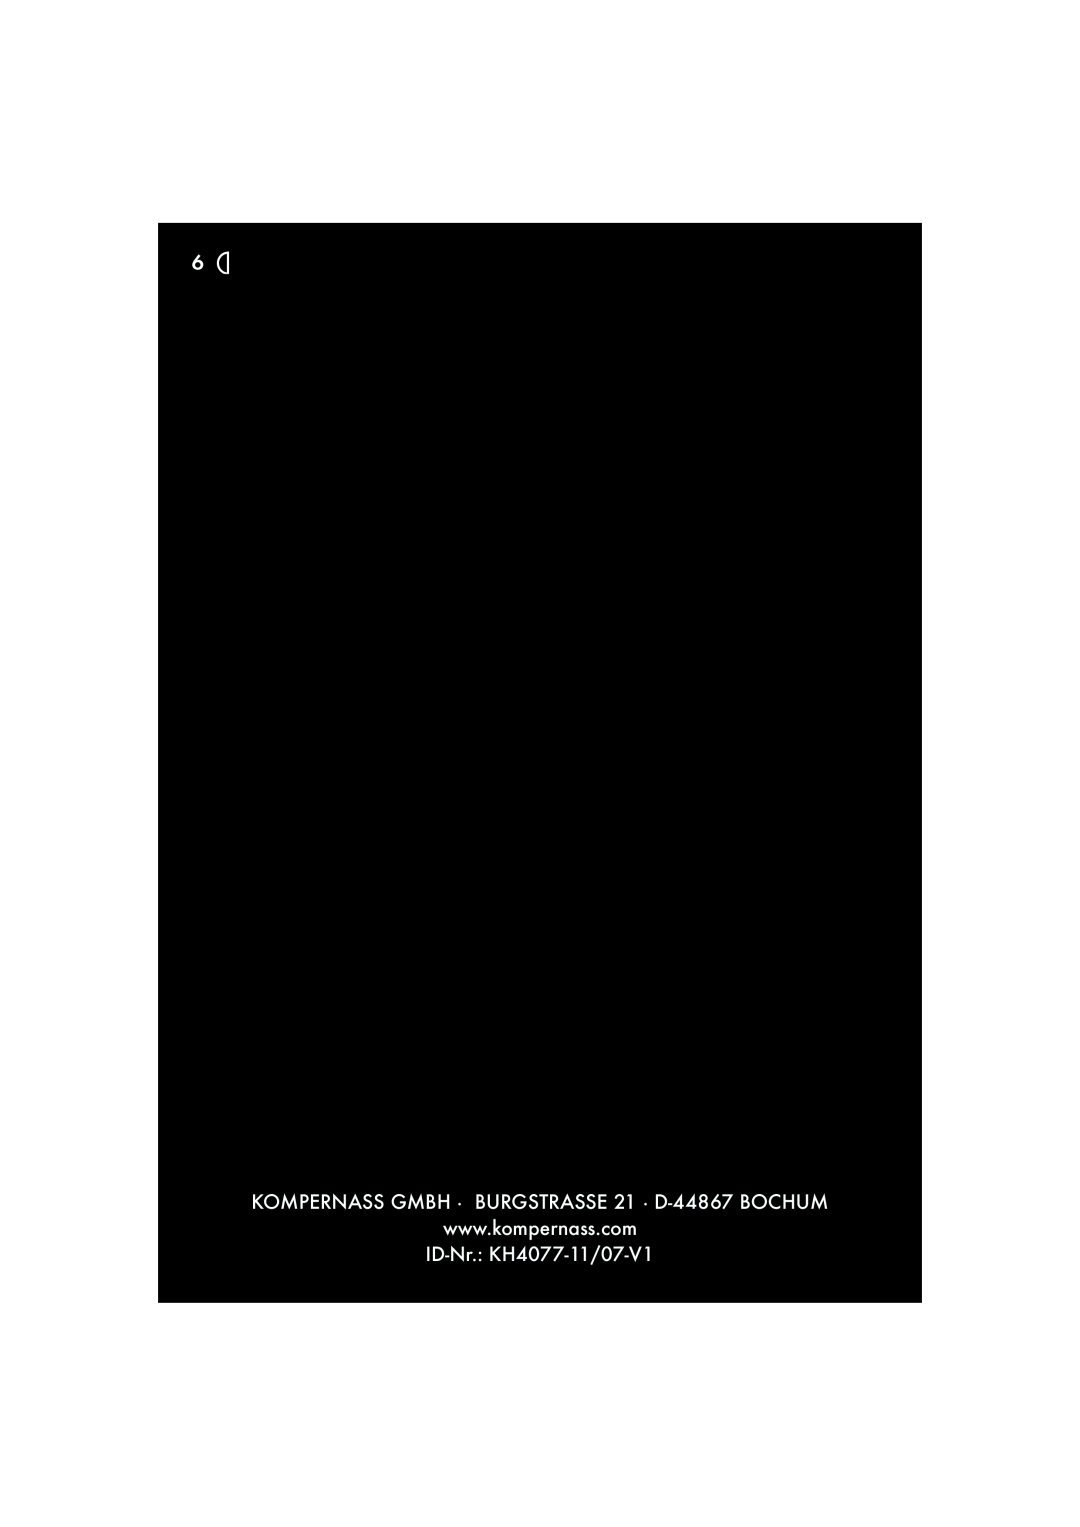 Kompernass manual KOMPERNASS GMBH · BURGSTRASSE 21 · D-44867 BOCHUM, ID-Nr. KH4077-11/07-V1 